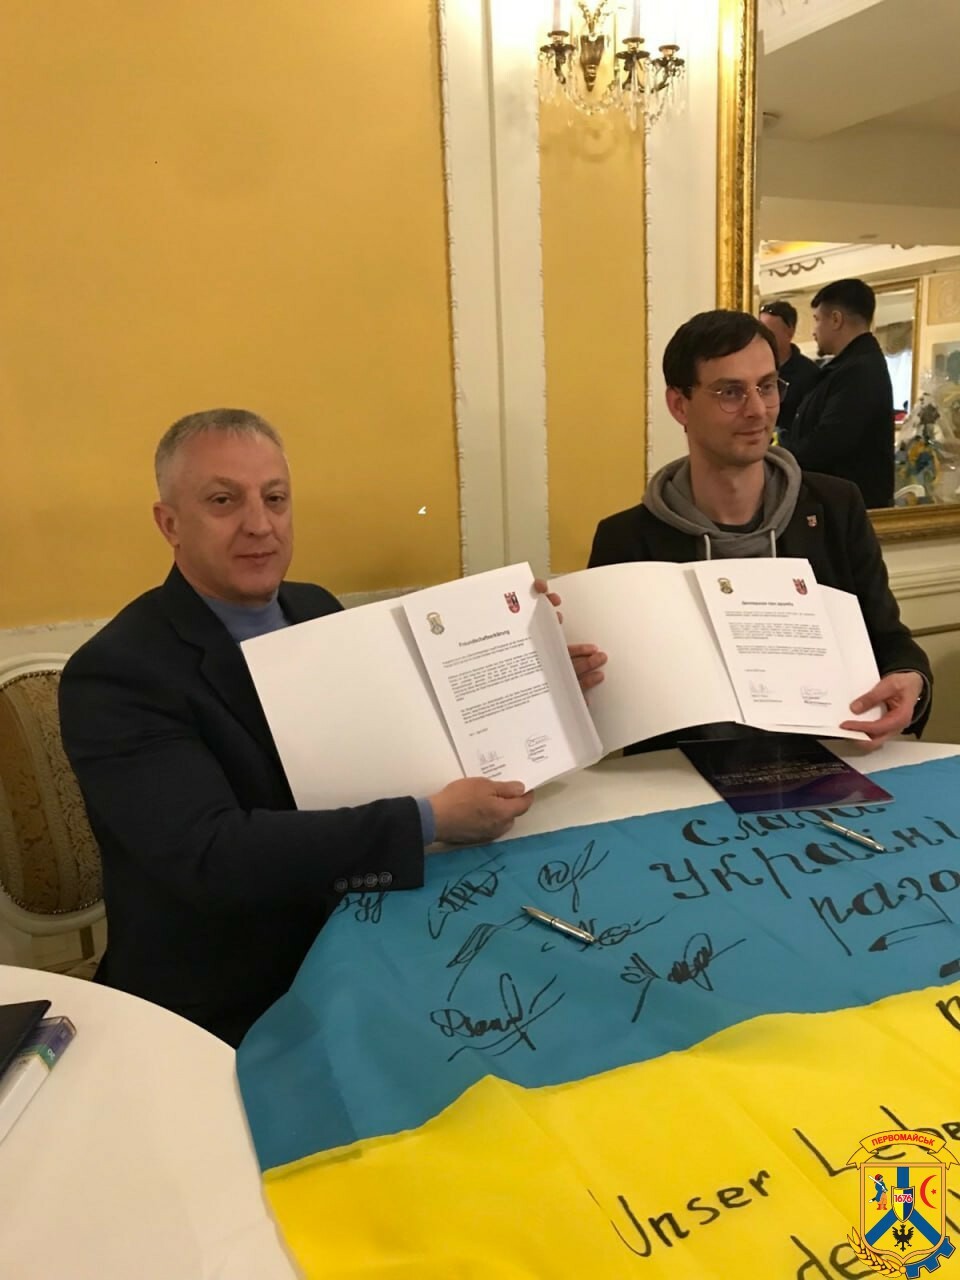 Unterzeichnung der Freundschaftserklärung durch die Bürgermeister von Pervomaisk und Neukölln